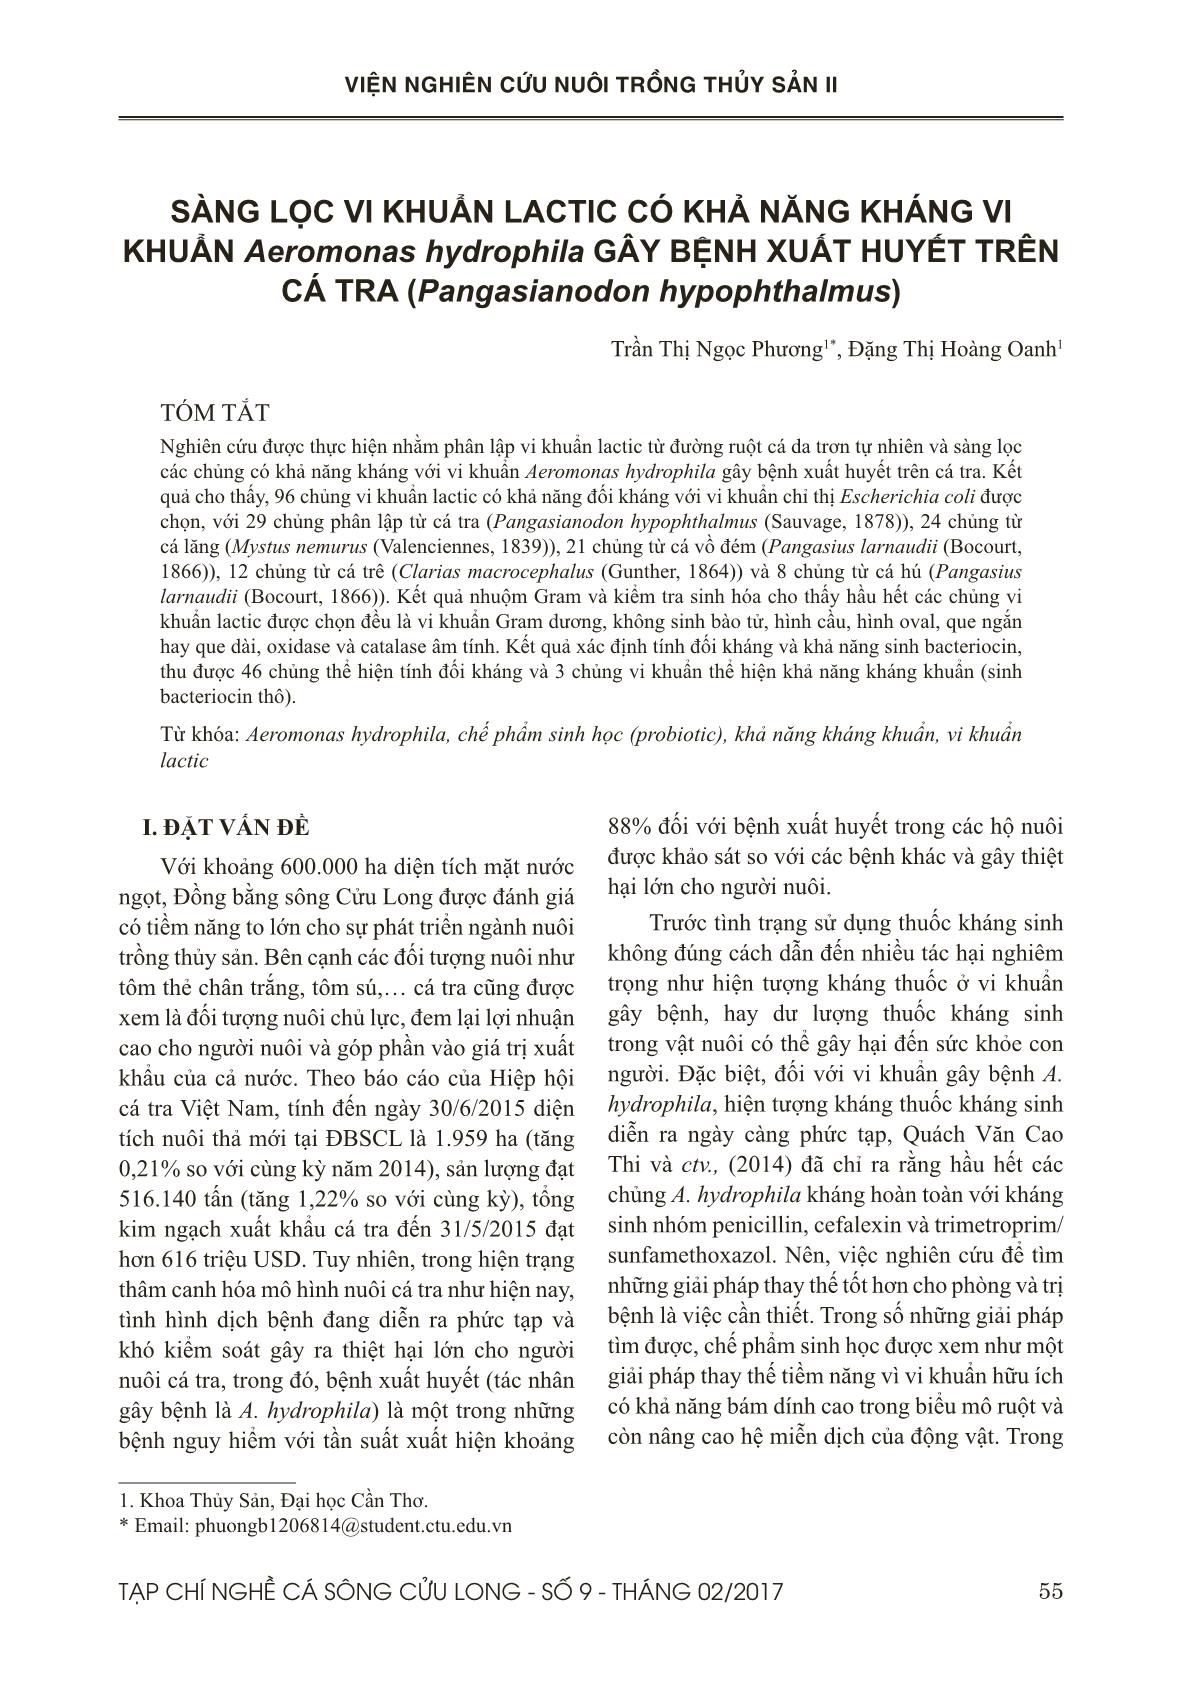 Sàng lọc vi khuẩn lactic có khả năng kháng vi khuẩn aeromonas hydrophila gây bệnh xuất huyết trên cá tra (pangasianodon hypophthalmus) trang 1